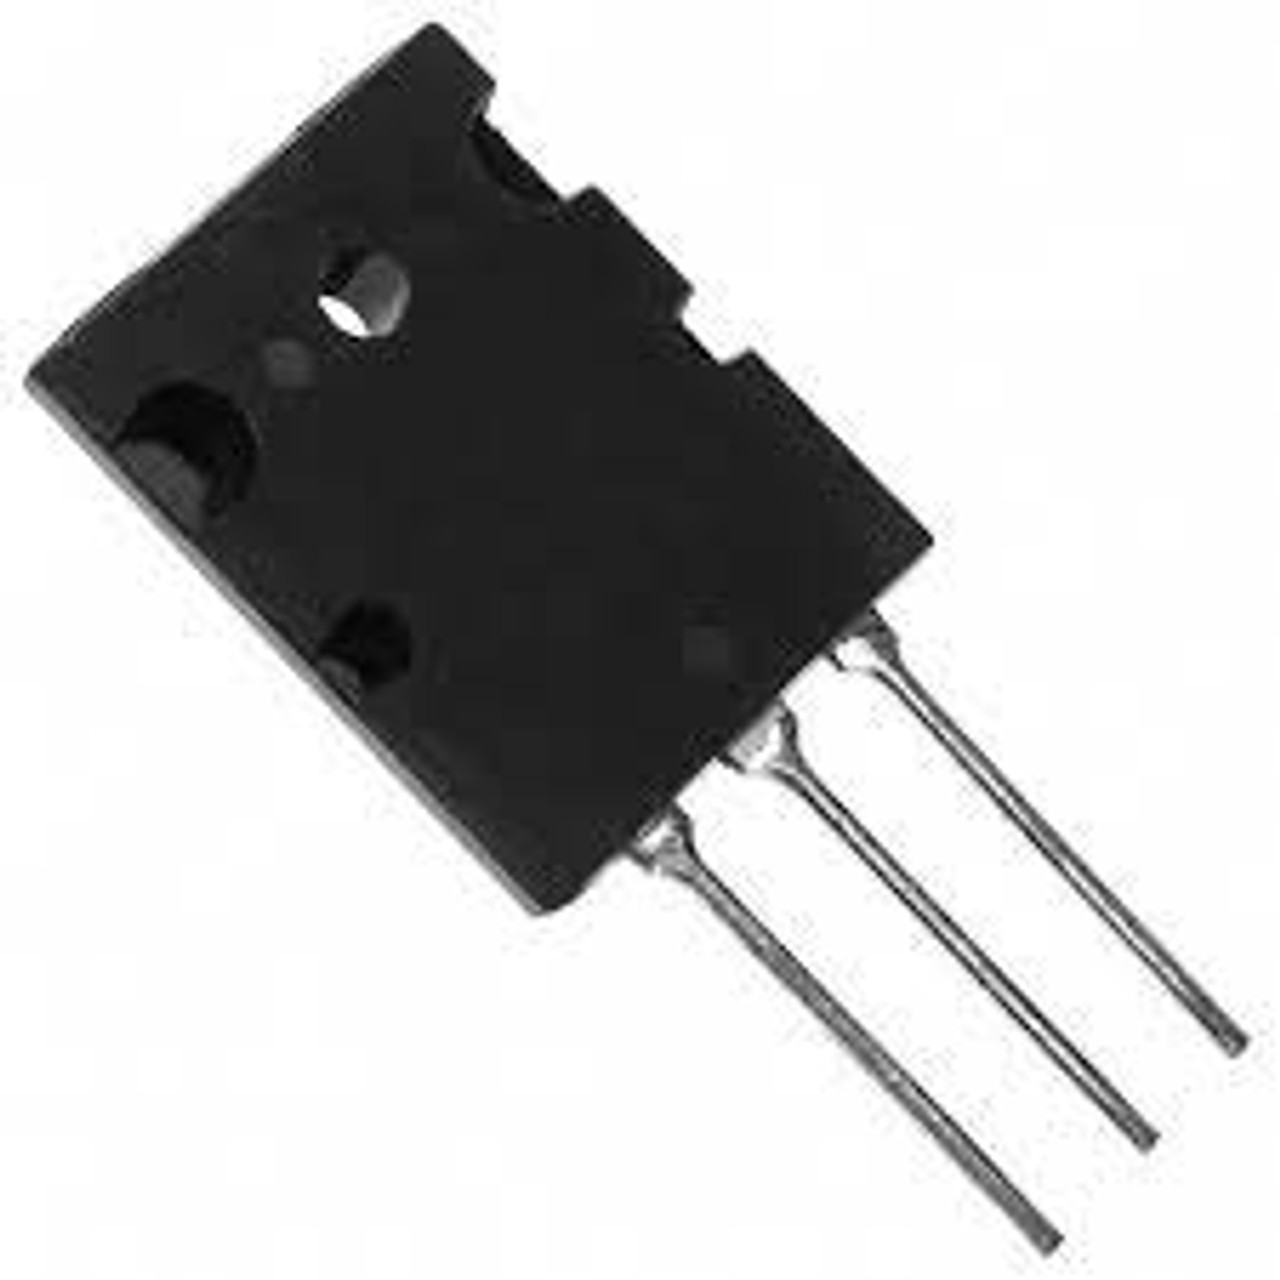 D1717 : 2SD1717 ; Transistor NPN 160V 12A 120W 20MHz, TO-3PL BCE